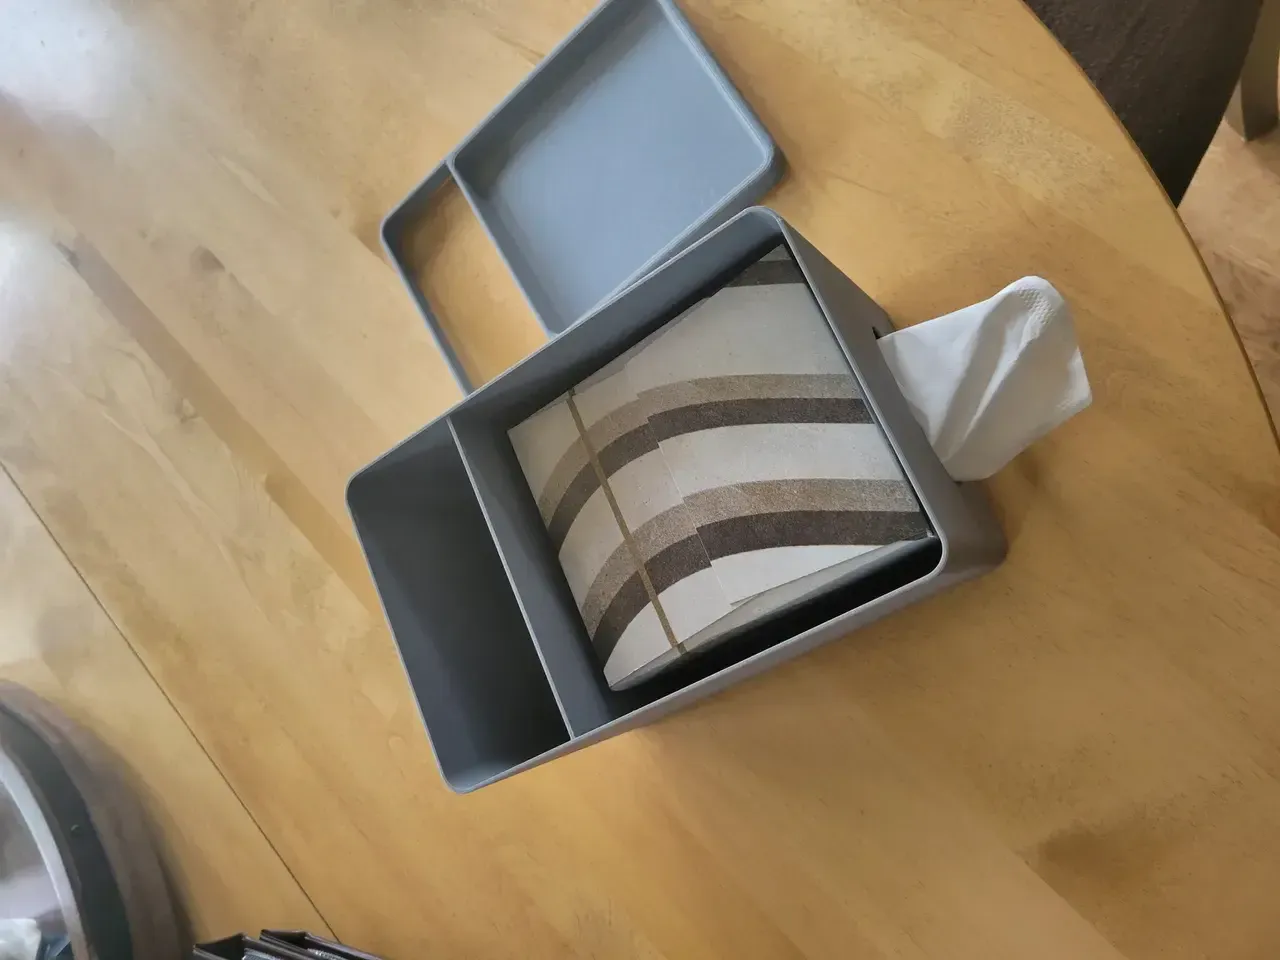 Tissue box cover organizer with remote storage

